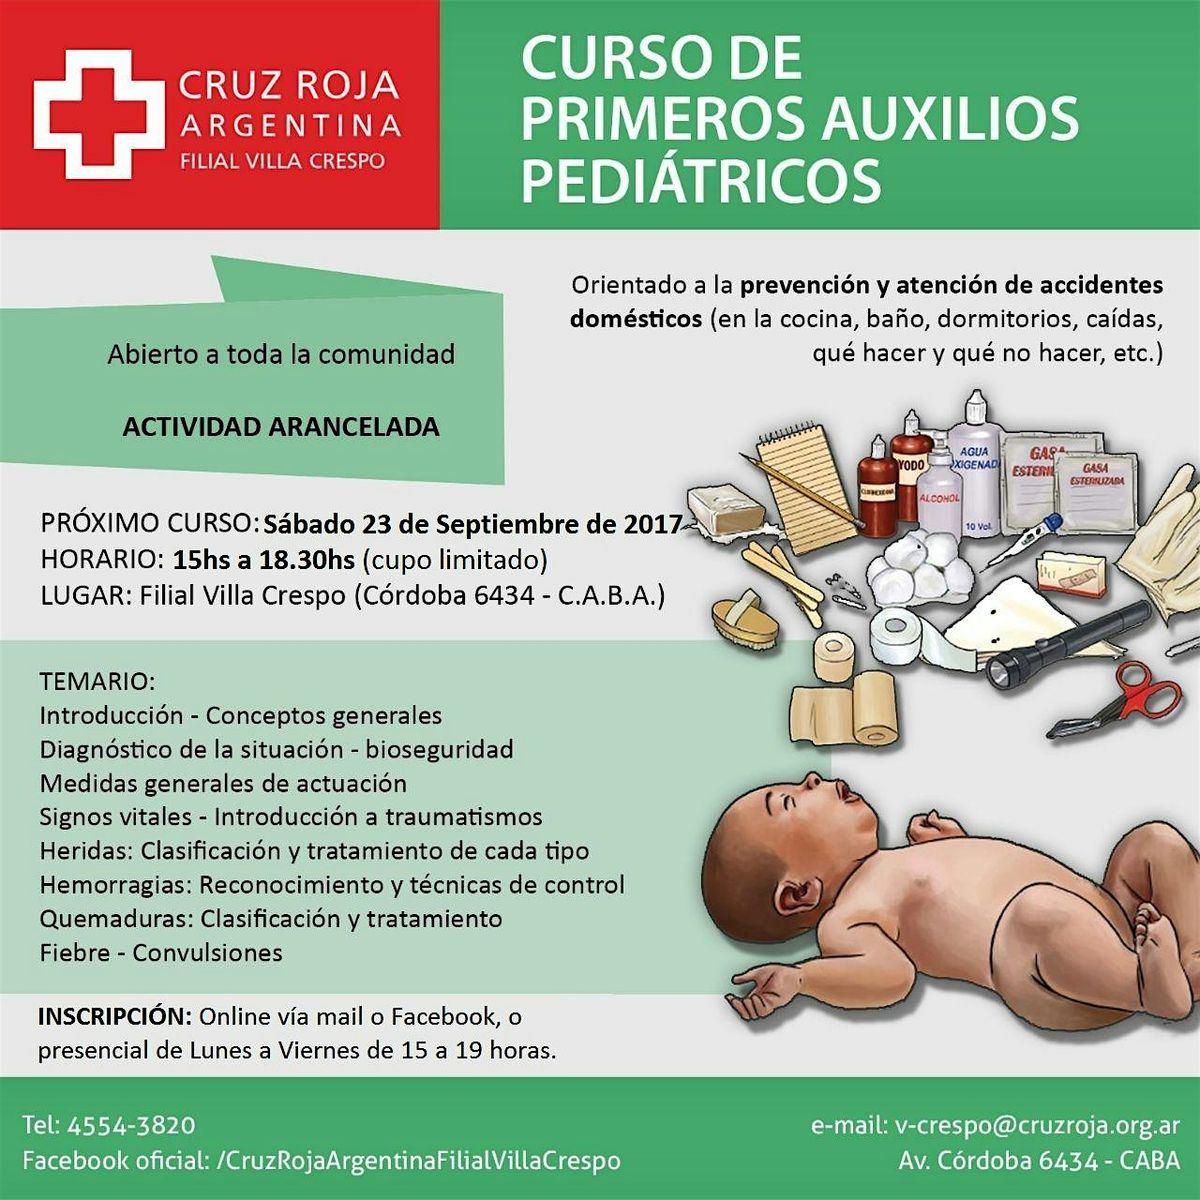 Curso de RCP en Cruz Roja (mi\u00e9rcoles 08-05-24) 18 a 22 hs - Duraci\u00f3n 4 hs.